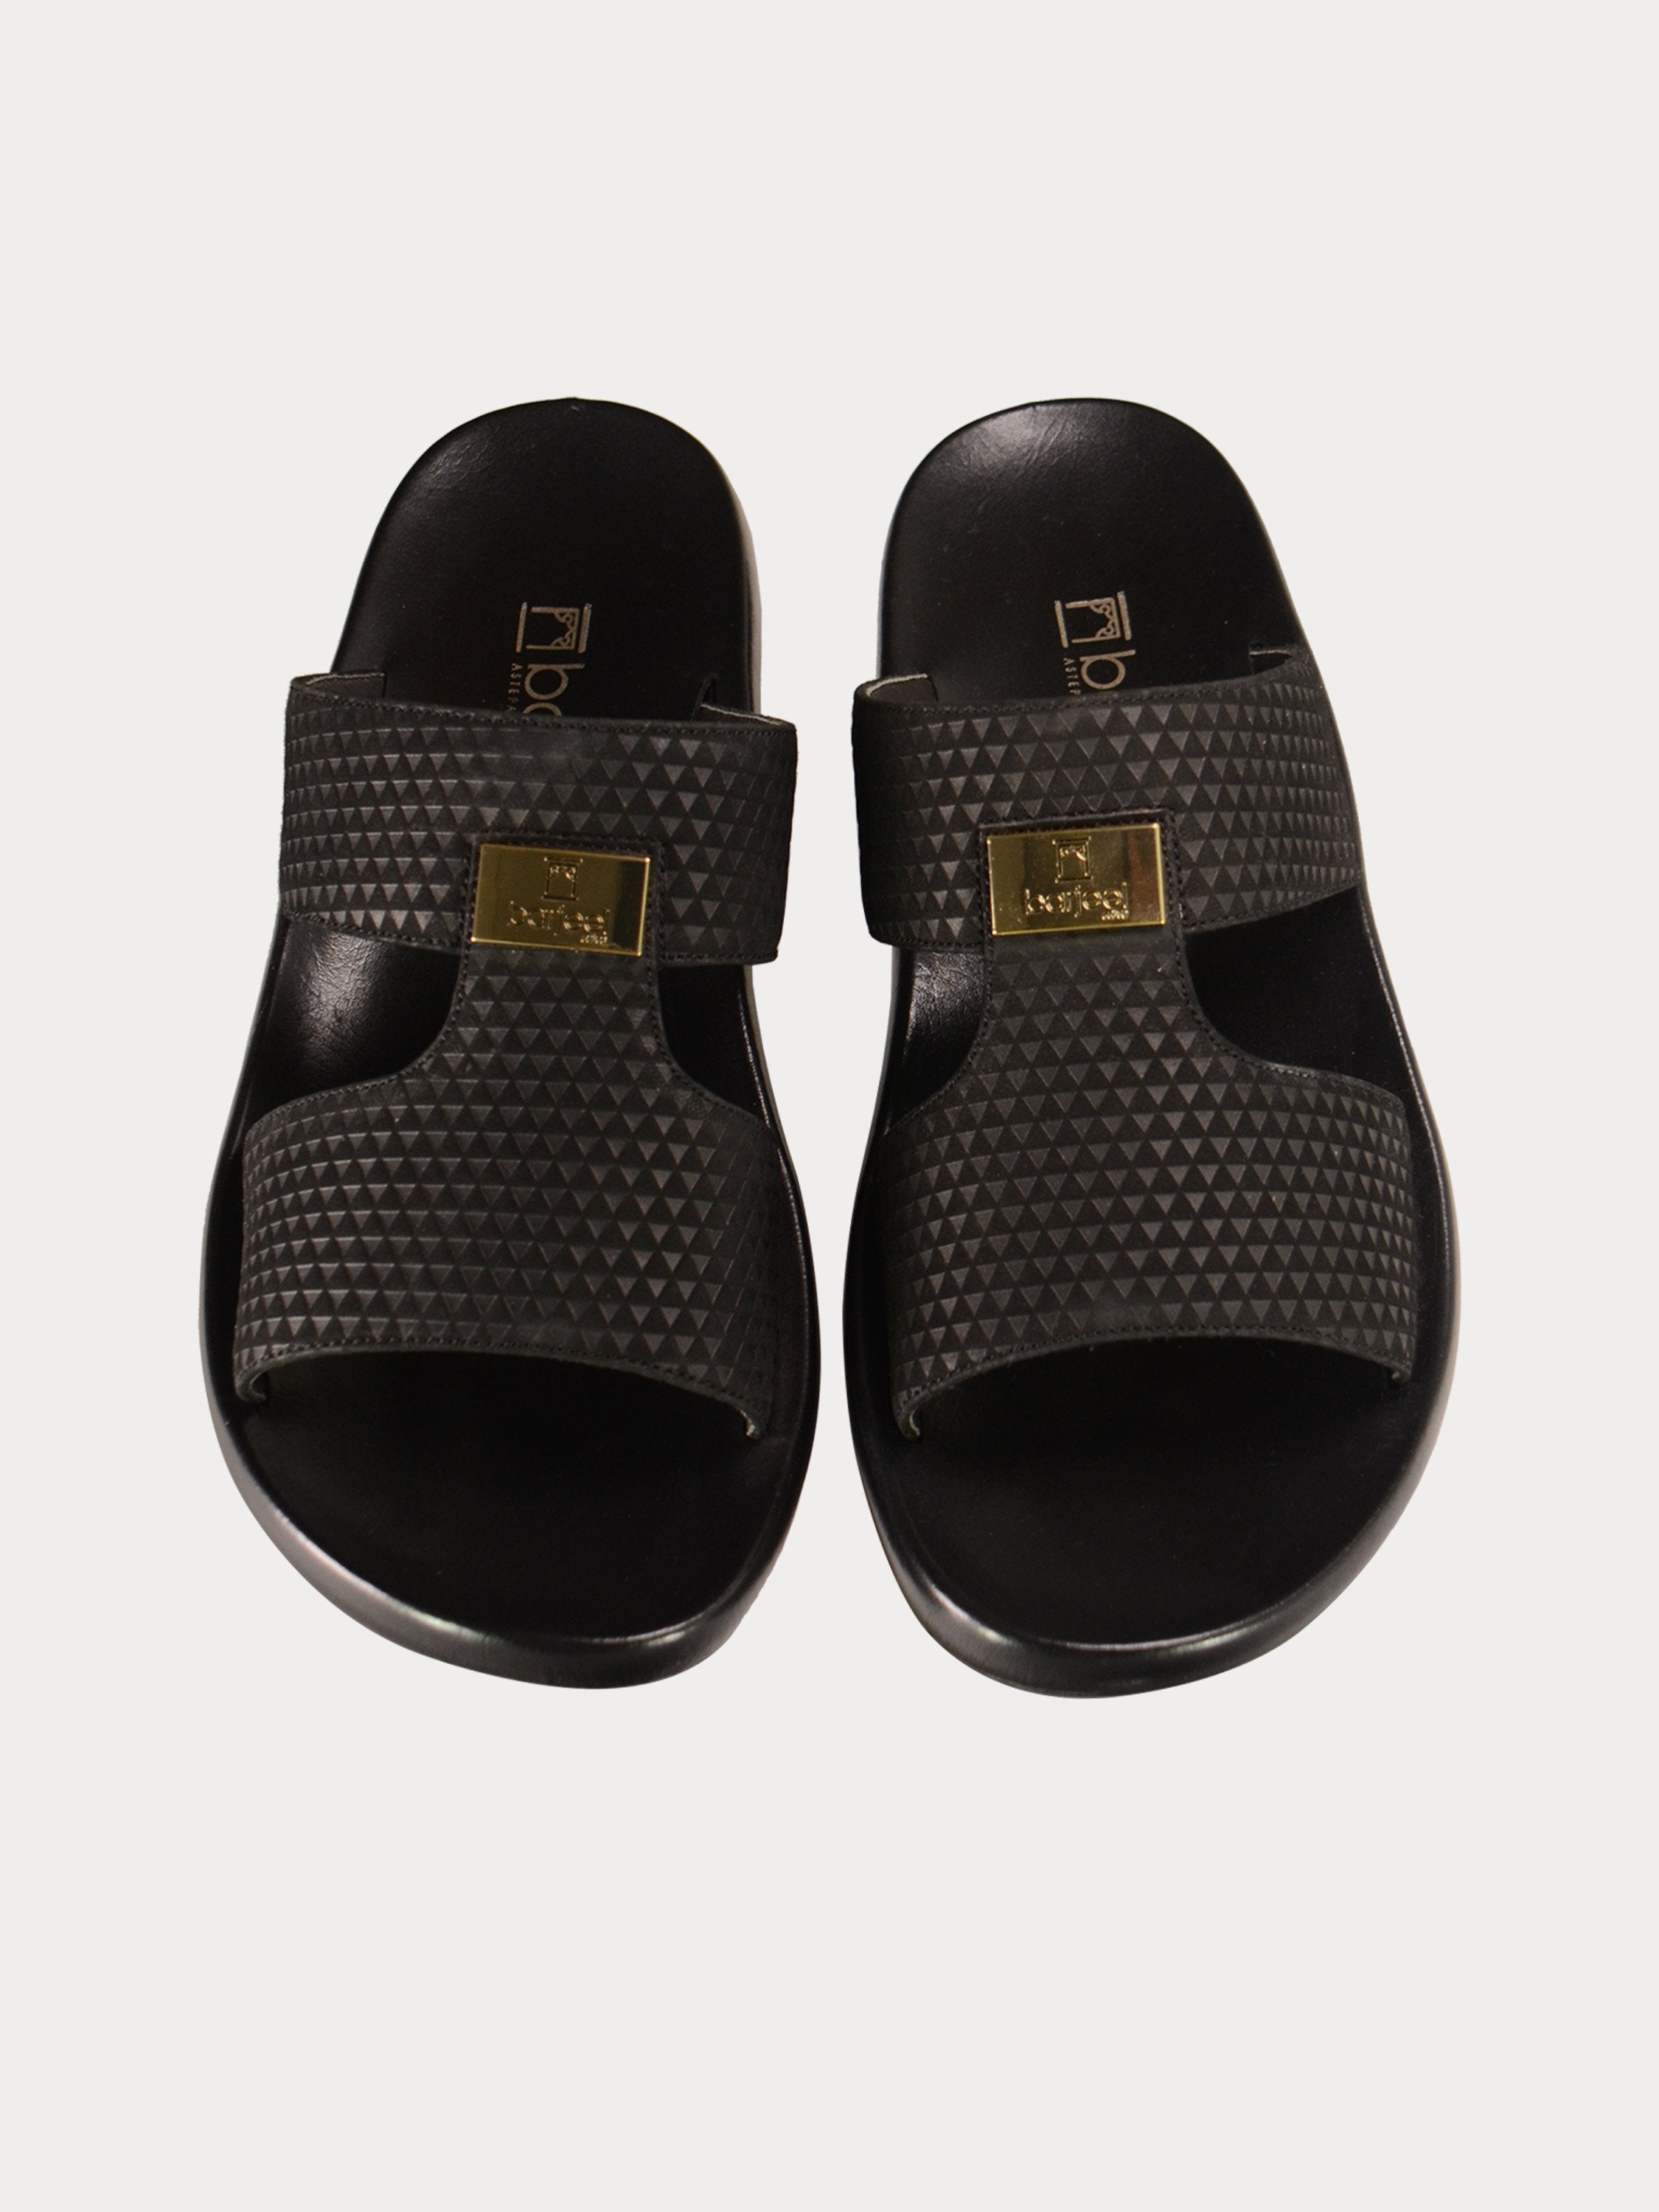 Barjeel Uno 0190520 Textured Suede Arabic Sandals #color_Black